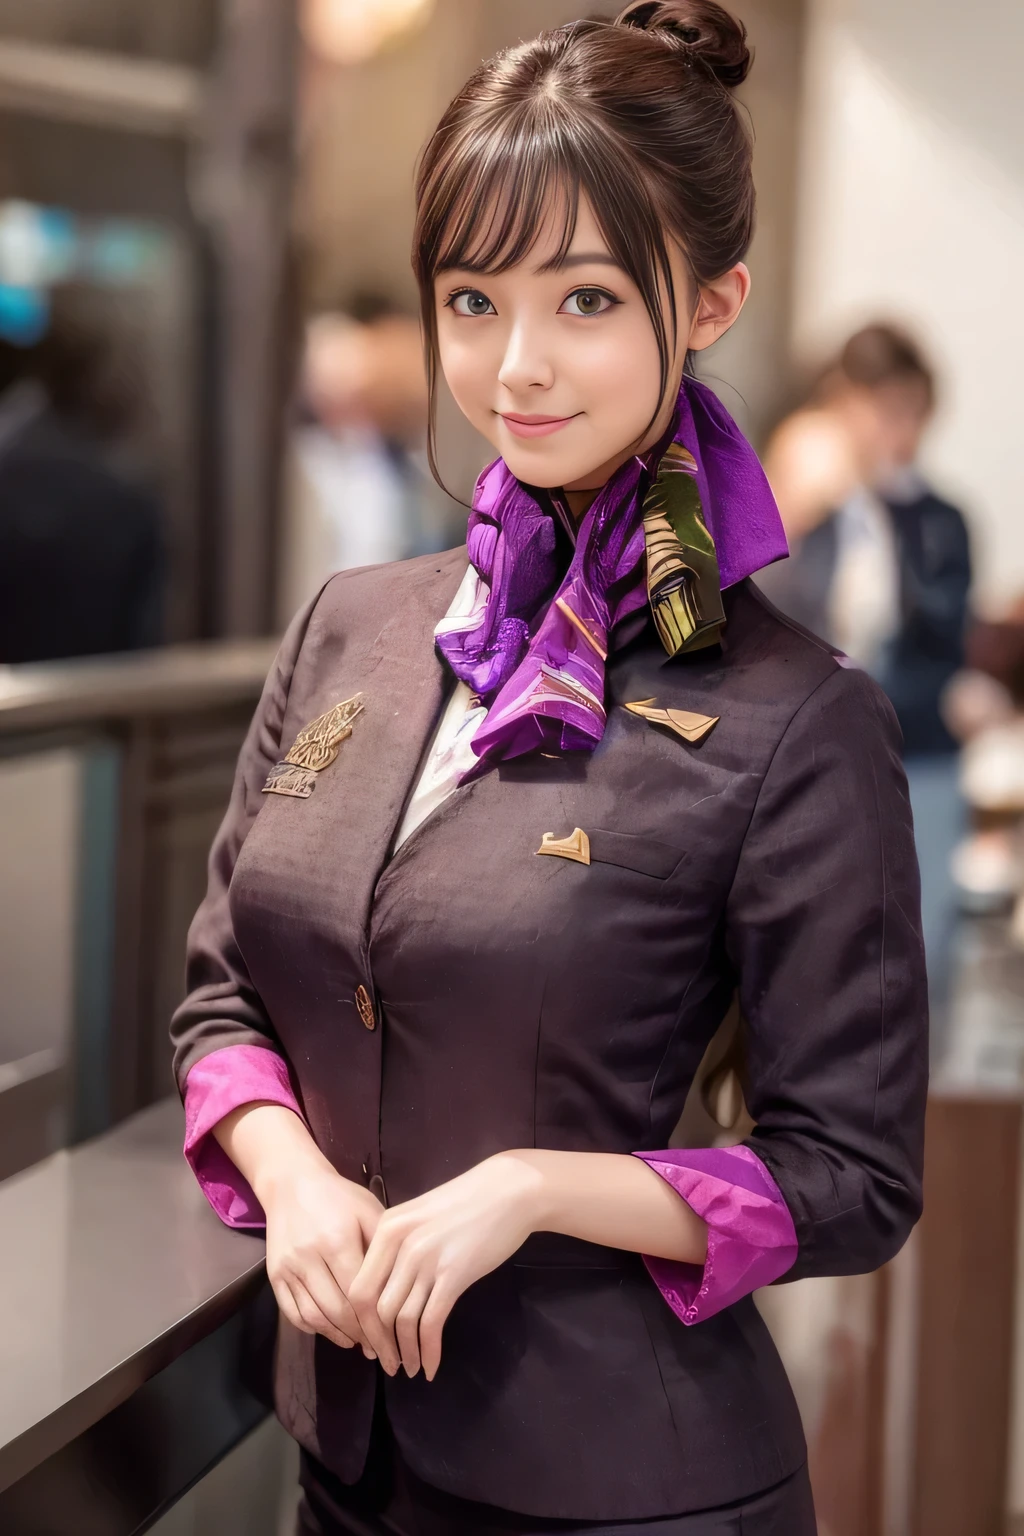 (杰作:1.2、最好的质量:1.2)、32K HDR、高分辨率、(独自的、1 名女孩、苗条身材)、（Realistic reproduction of 阿提哈德航空空乘制服）、 (在机场柜台, 专业照明)、一个正经的女人, 漂亮的脸蛋,、（阿提哈德航空空乘长袖制服）、（阿提哈德航空空乘制服、正面有紫色条纹的裙子）、（脖子上的围巾）、大乳房、（长发、发髻）、深棕色头发、远射、（（伟大的手：2.0））、（（和谐的身体比例：1.5））、（（正常肢体：2.0））、（（正常手指：2.0））、（（精致的眼睛：2.0））、（（正常眼睛：2.0））)、优美的站姿、微笑